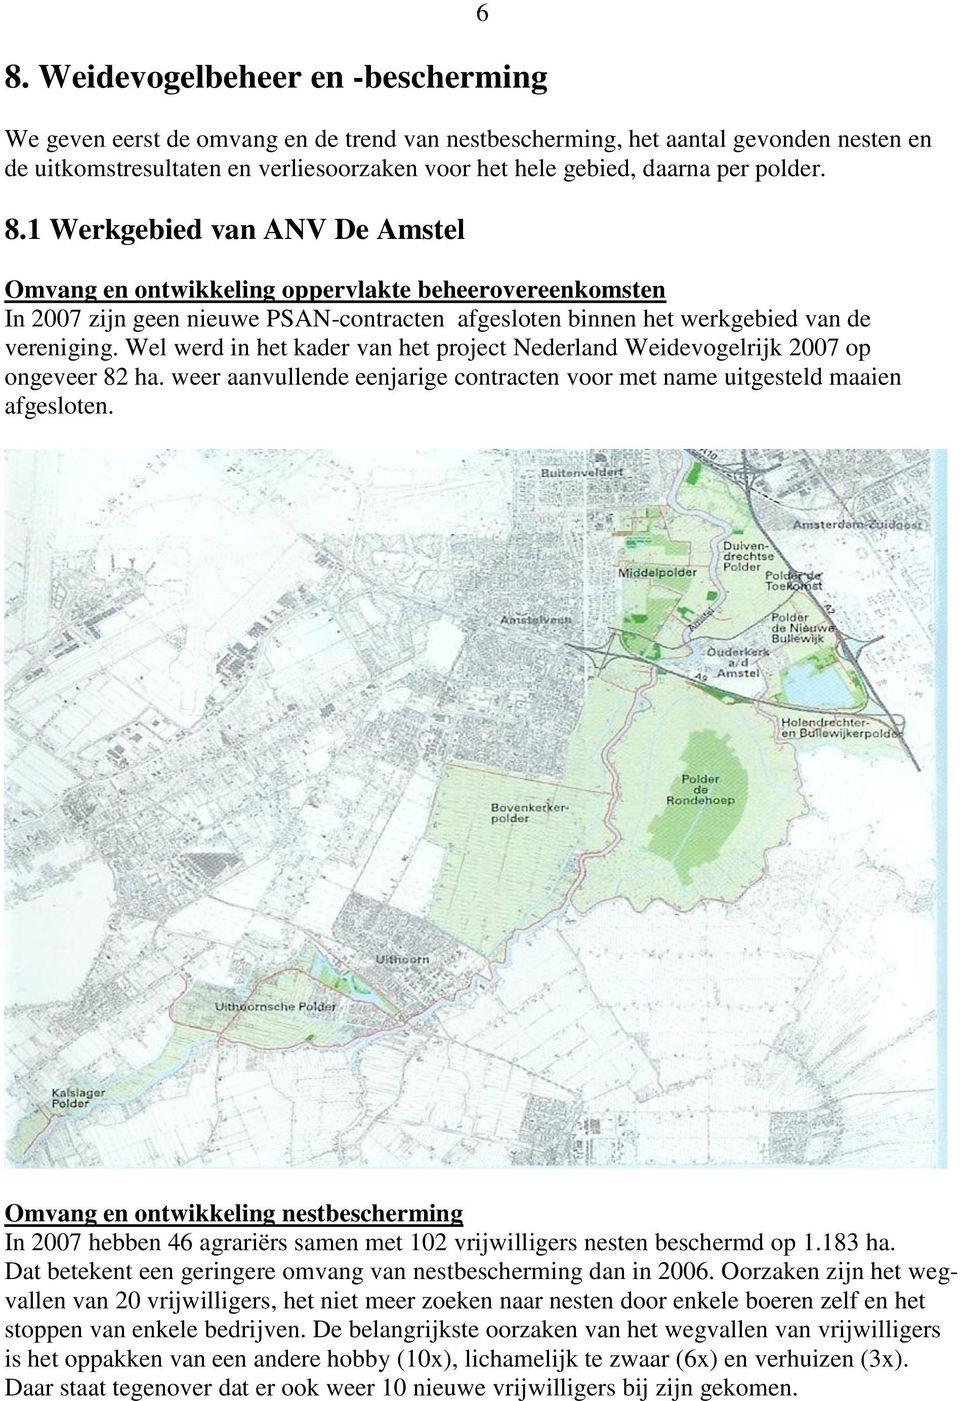 Wel werd in het kader van het project Nederland Weidevogelrijk 2007 op ongeveer 82 ha. weer aanvullende eenjarige contracten voor met name uitgesteld maaien afgesloten.